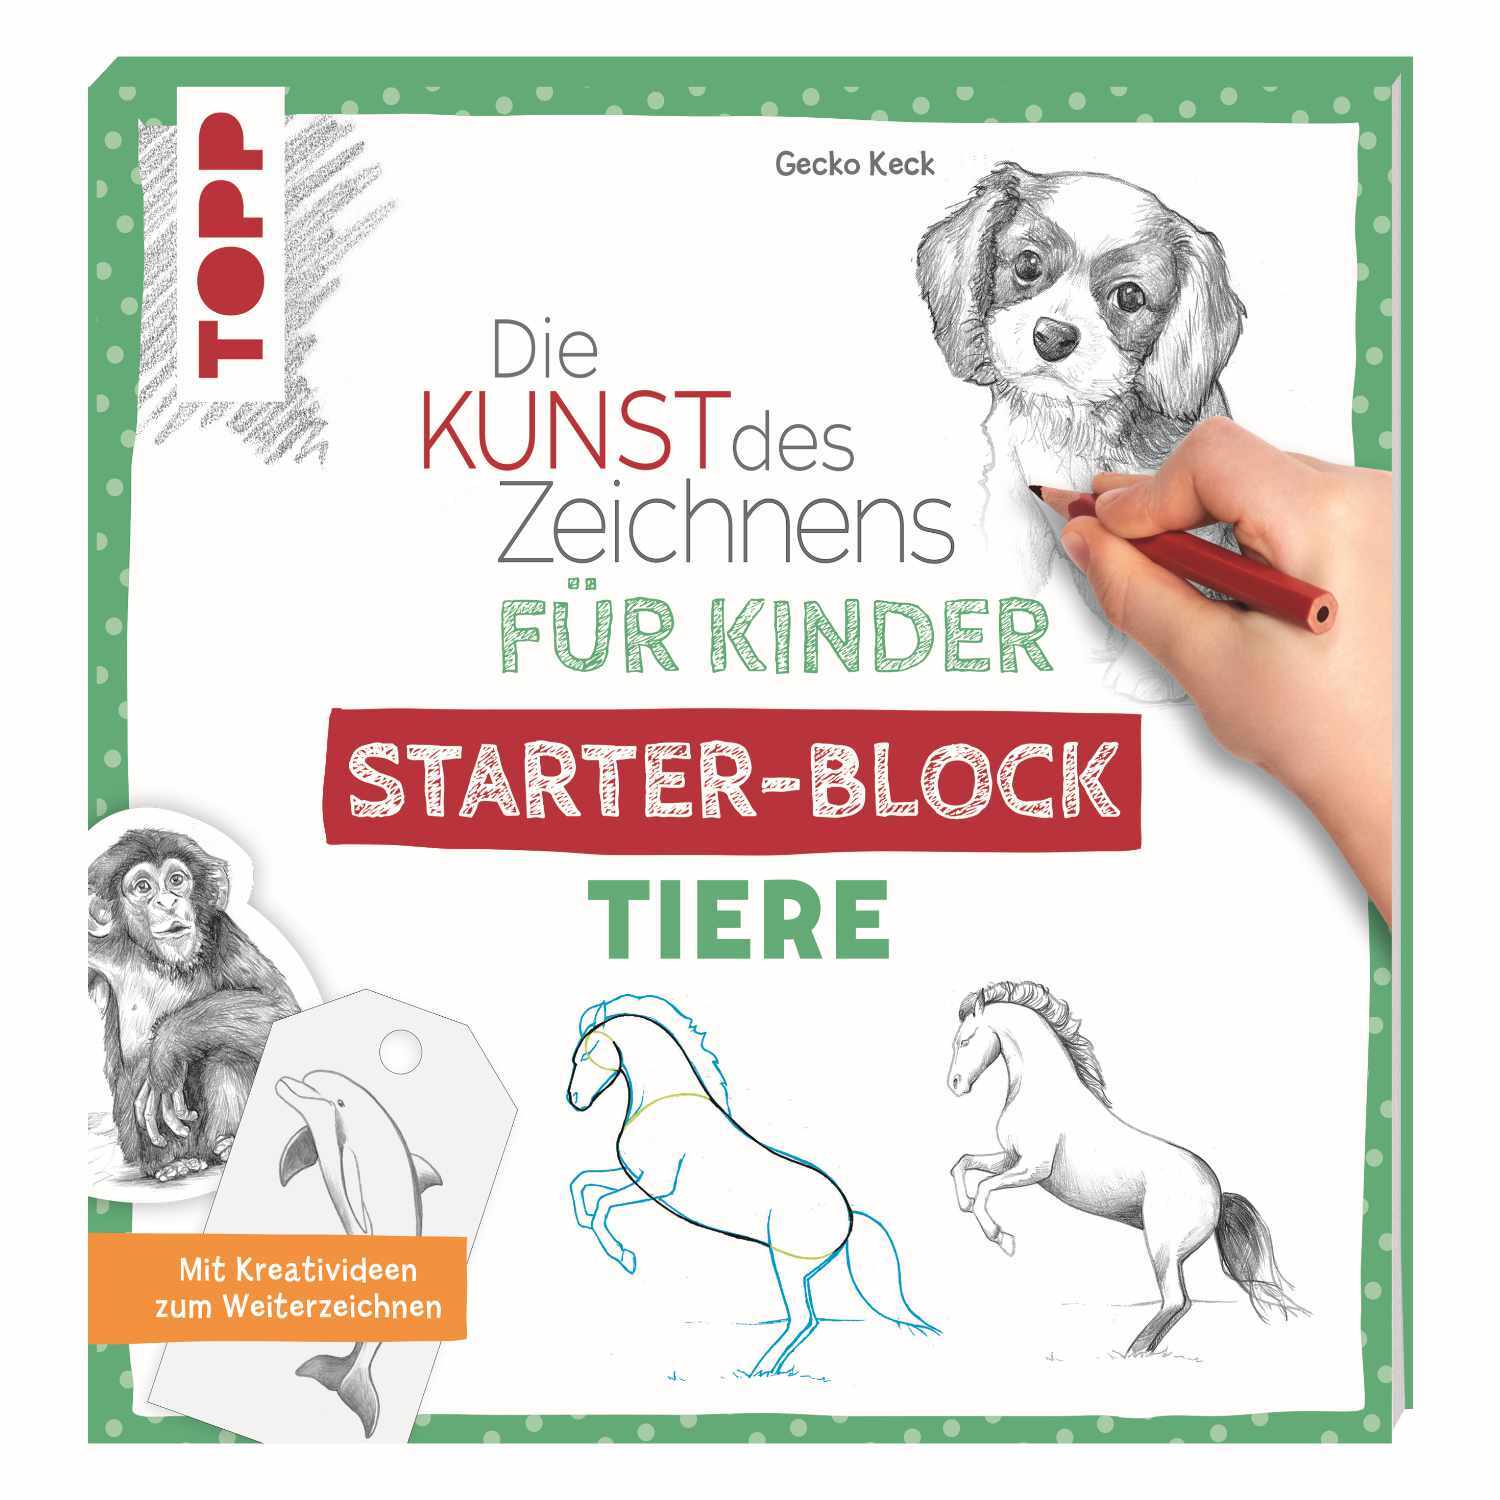 Die Kunst des Zeichnens für Kinder Starter-Block - Tiere